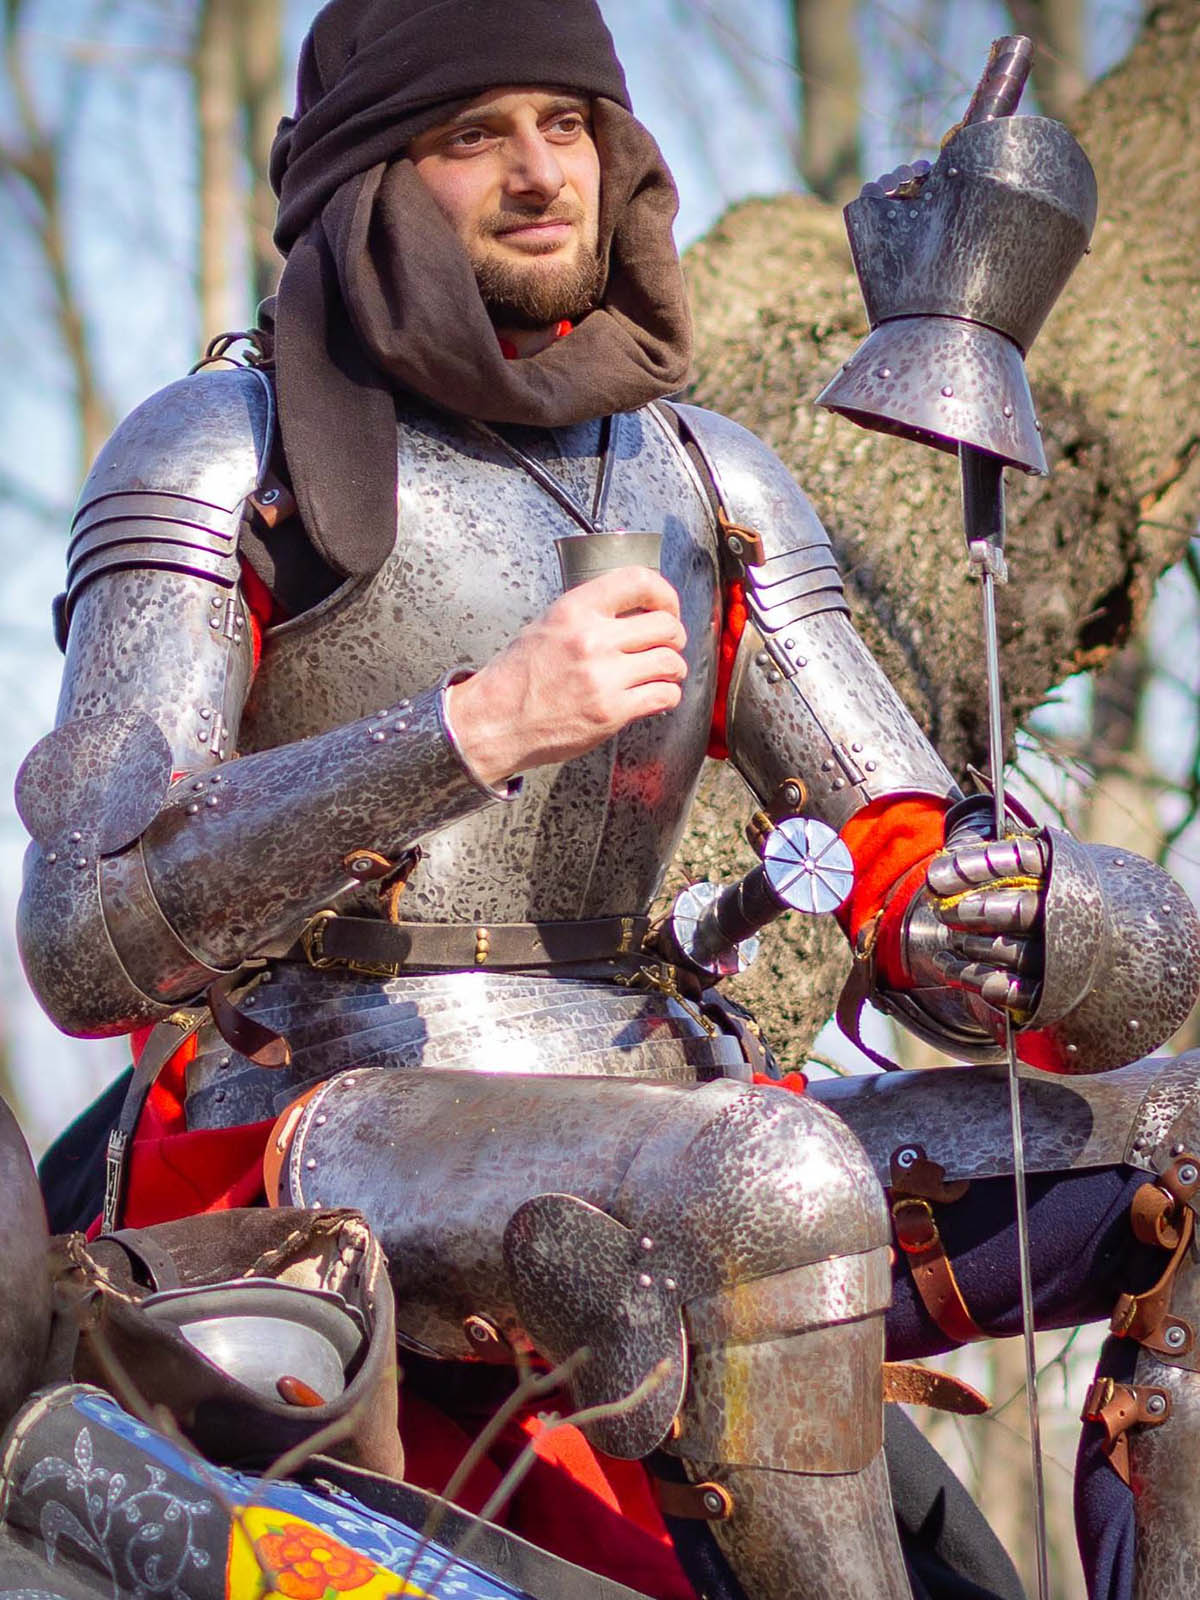 Medieval Cavalier Hinged Knightly Armor 16g Mild Steel Functional Bracers